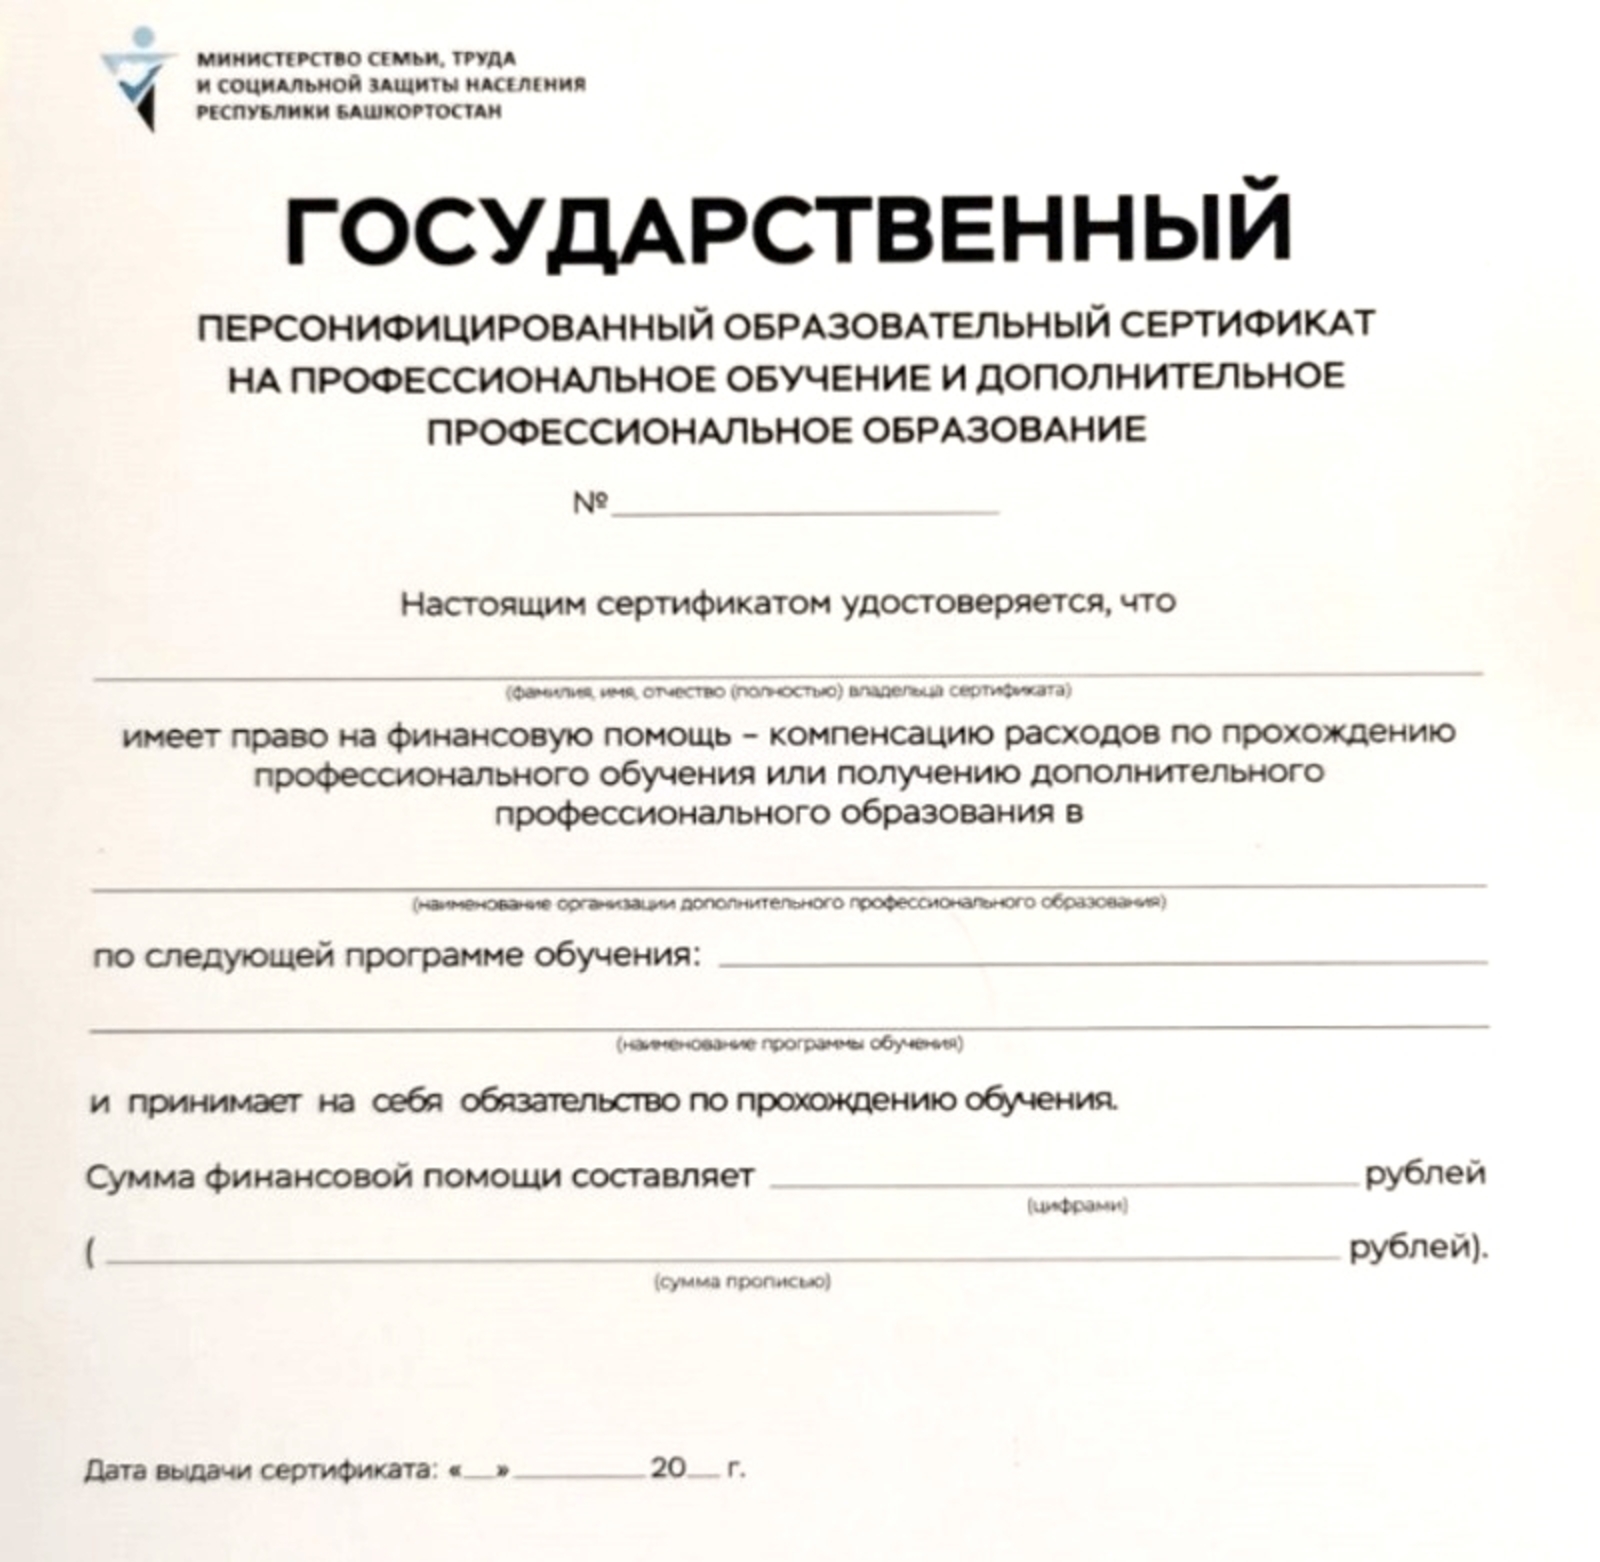 400 жителей Башкортостана смогут бесплатно обучиться по образовательным сертификатам в этом году